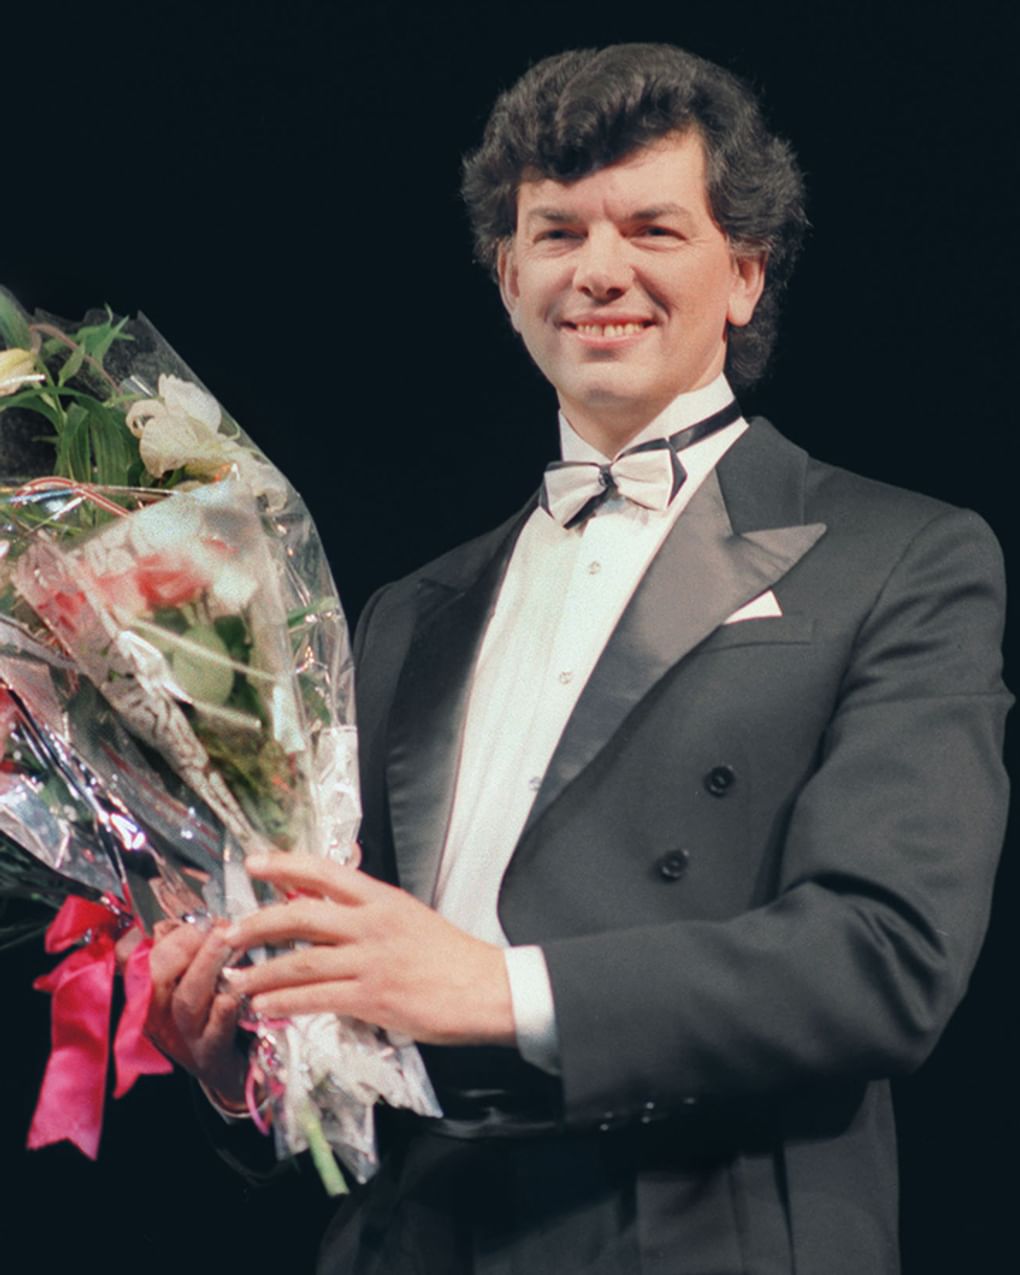 Сергей Захаров: биография певца на Википедии